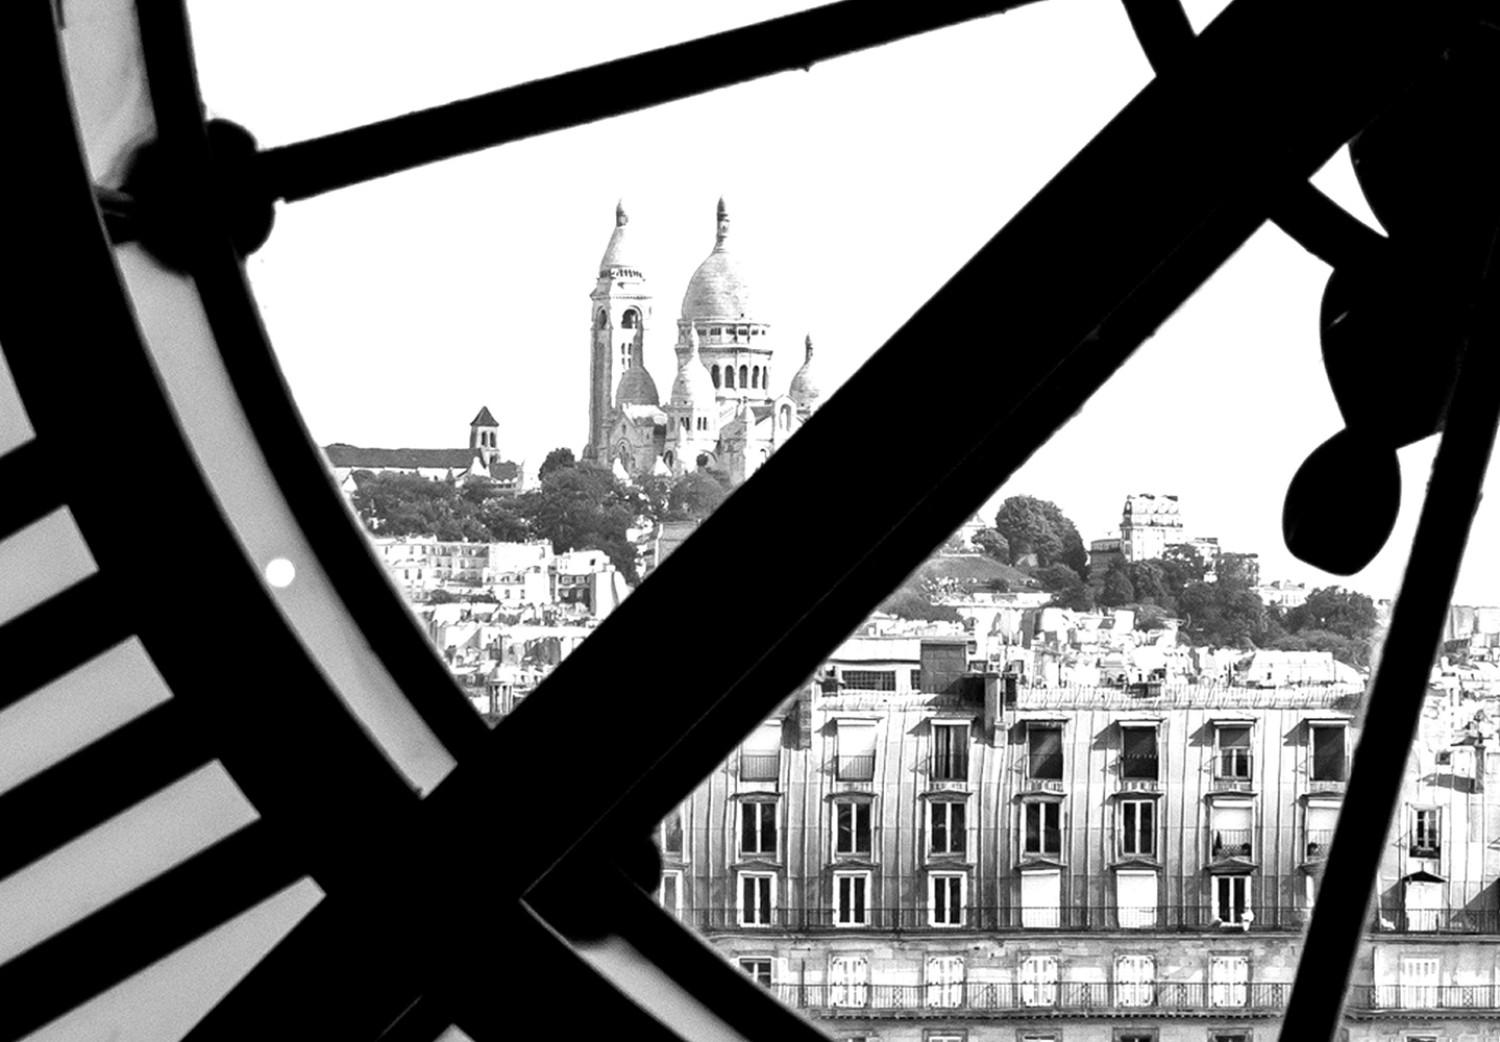 Cuadro El Reloj de la Basílica del Sacré-Cœur - la arquitectura de París